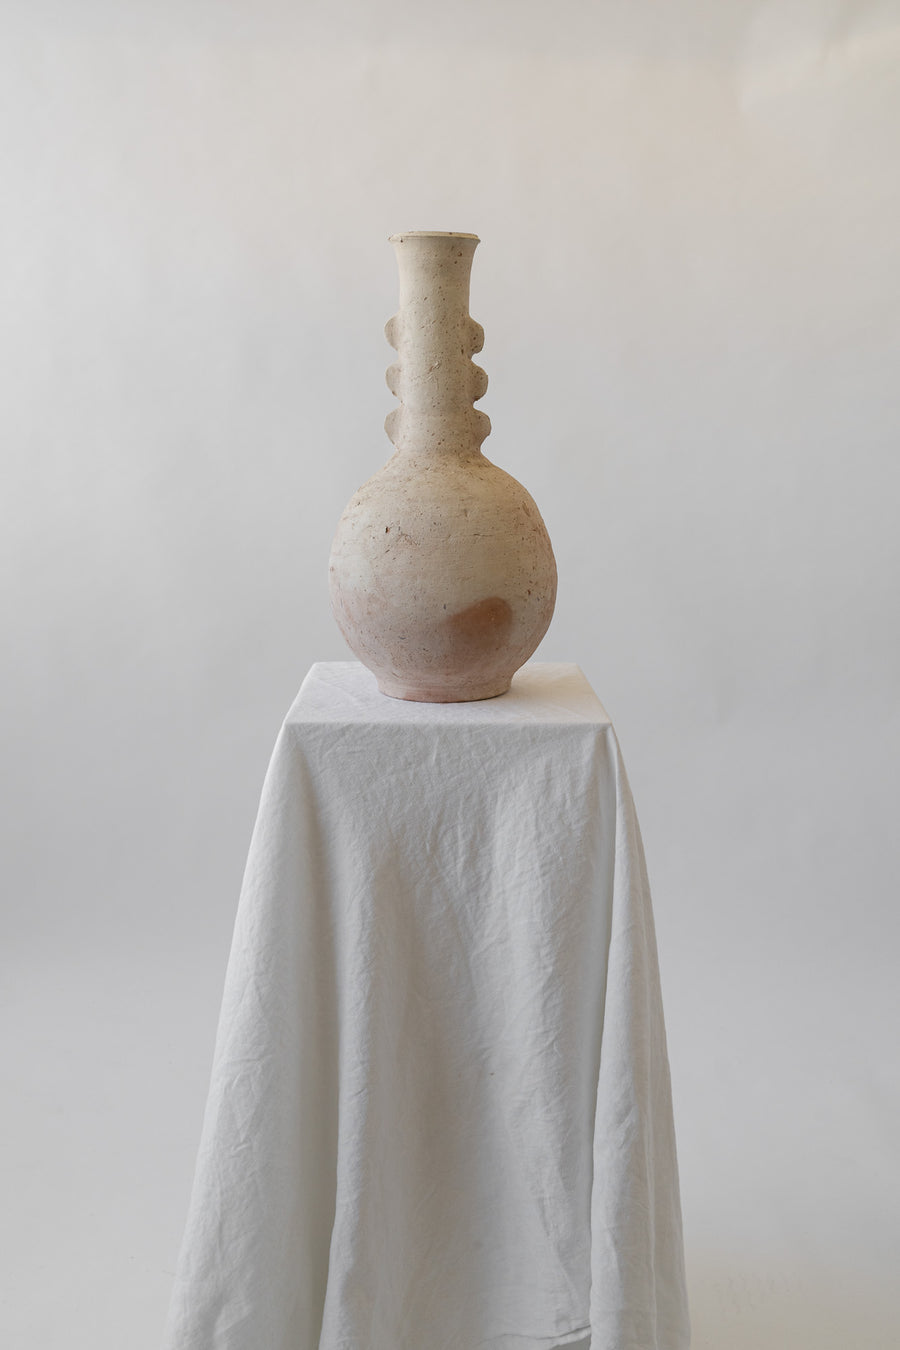 Terracotta Abstract Vase